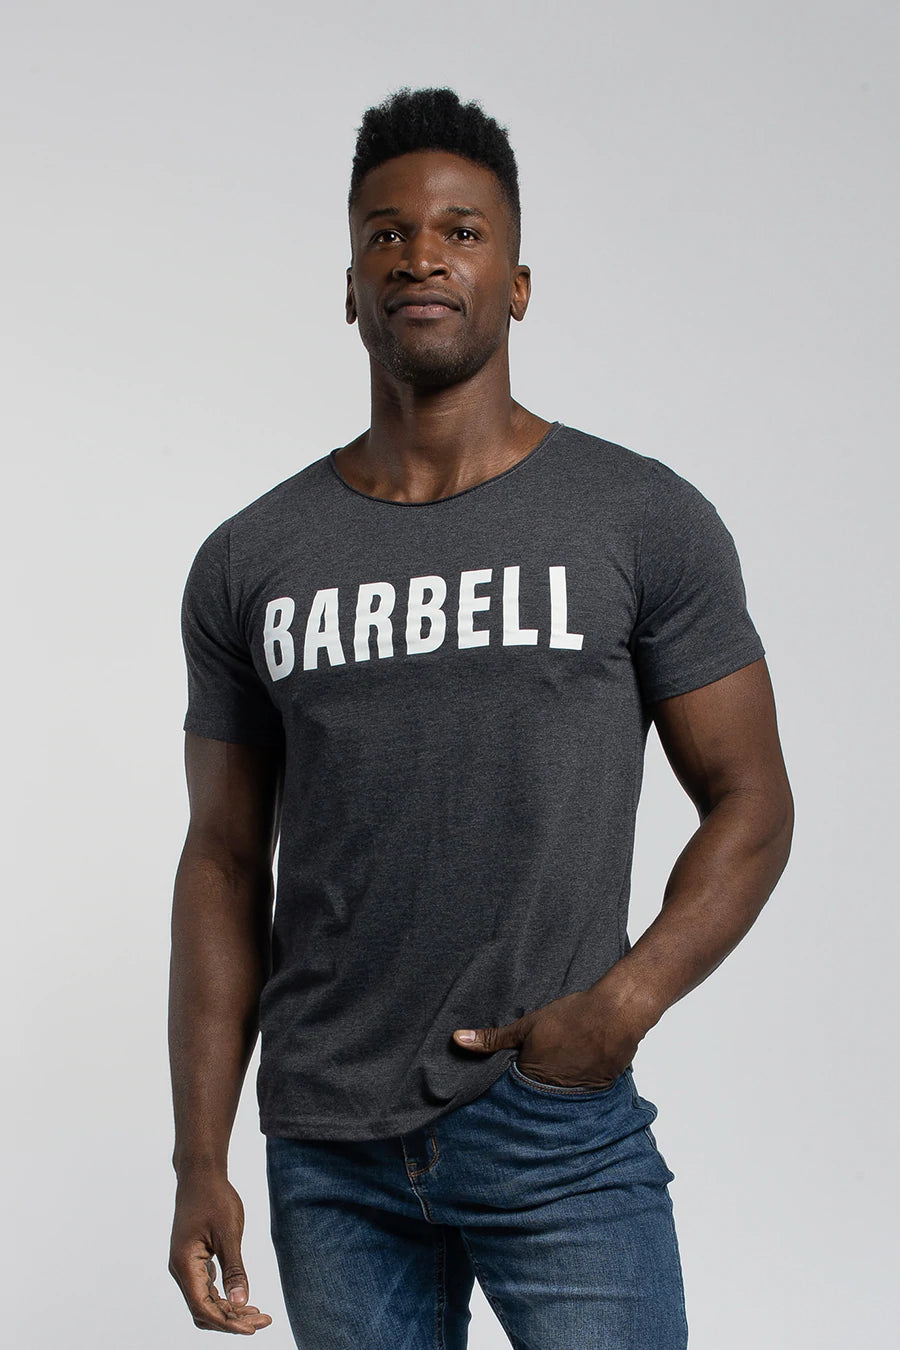 Barbell Club Men's T-shirt